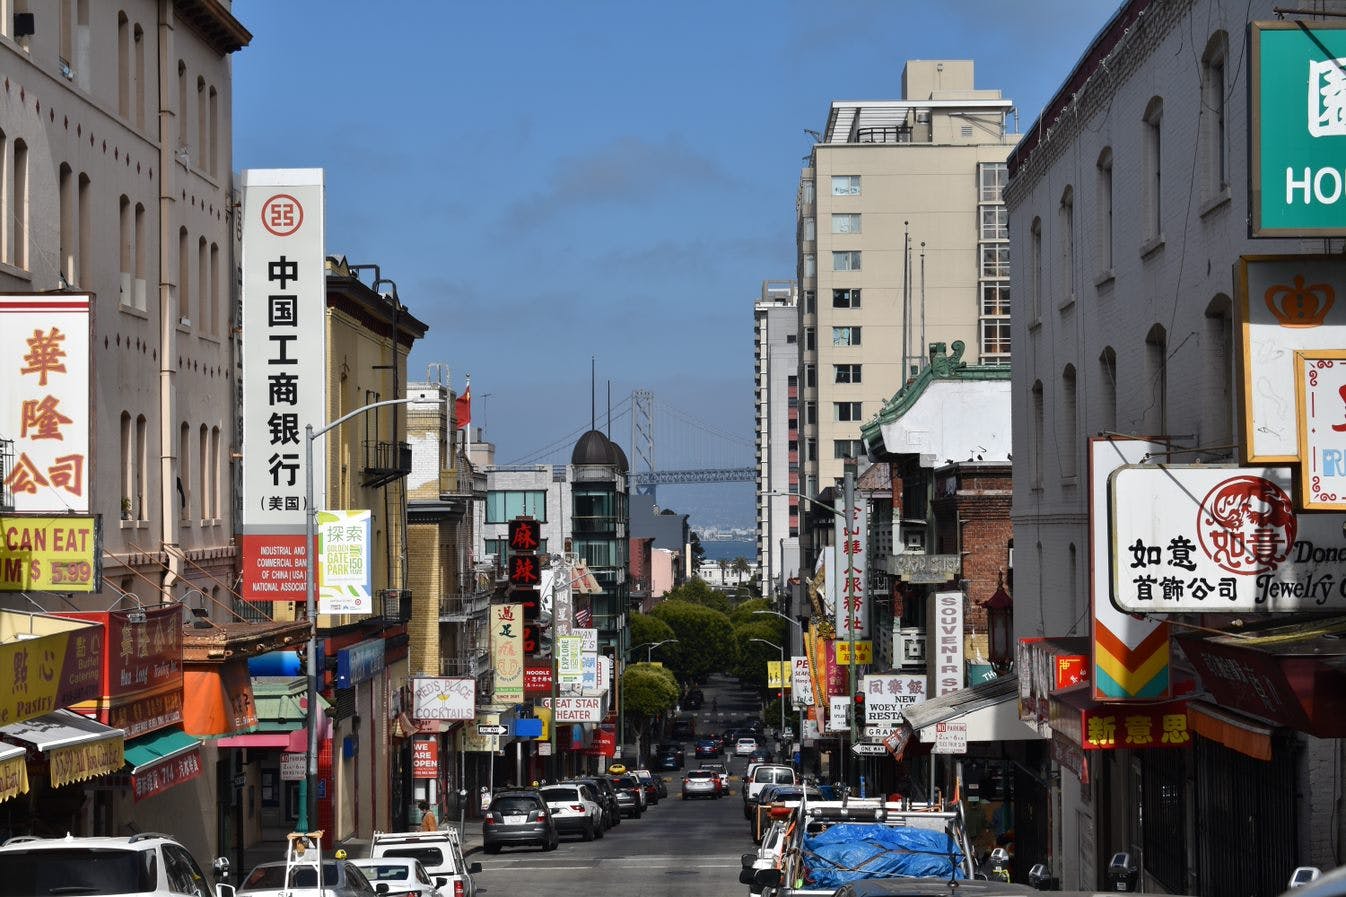 Passeio a pé sobre culinária e história em San Francisco Chinatown